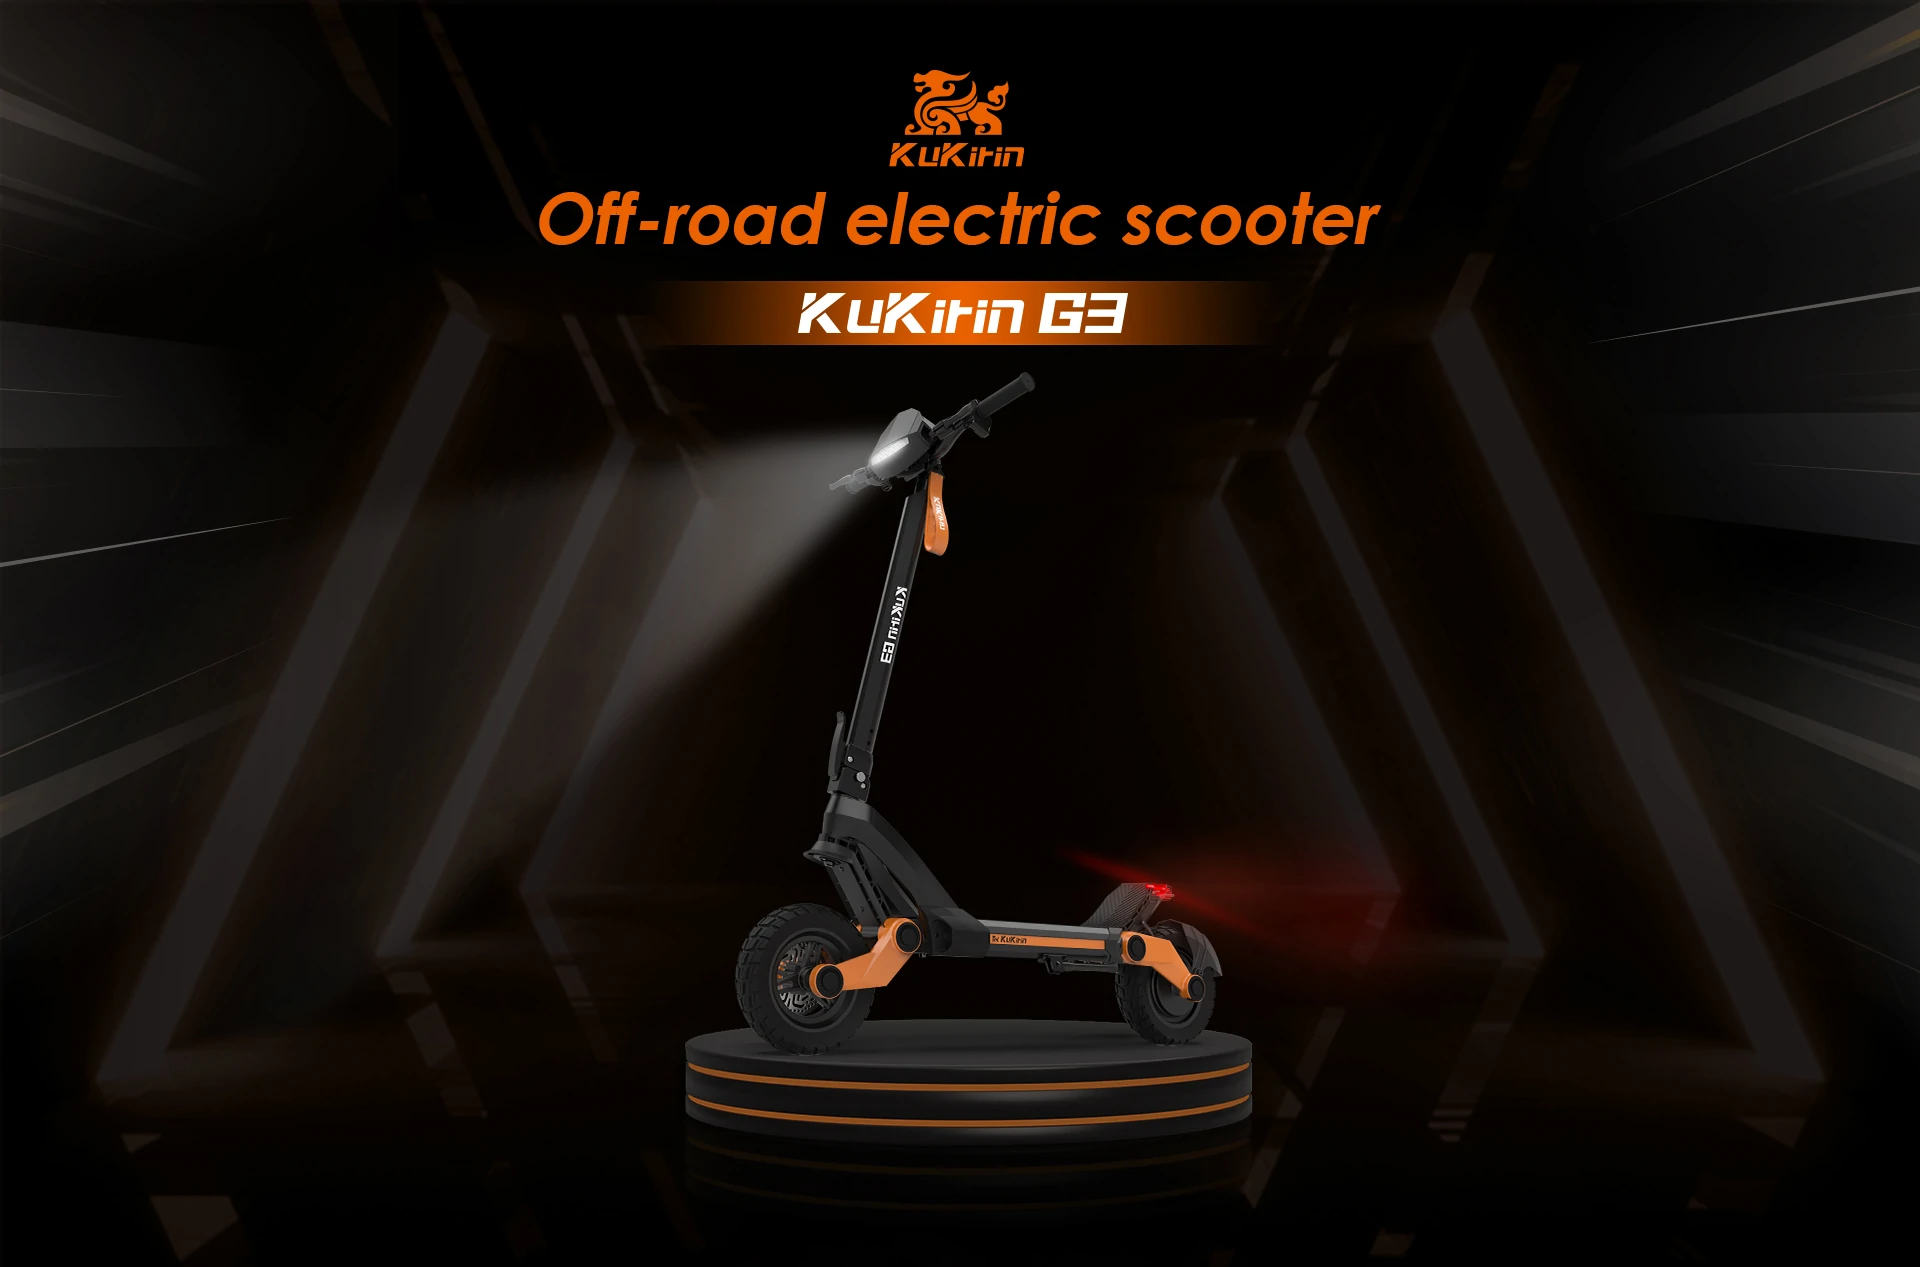 KuKirin G3 – Cost-effective off-road scooter with 1200 watt motor